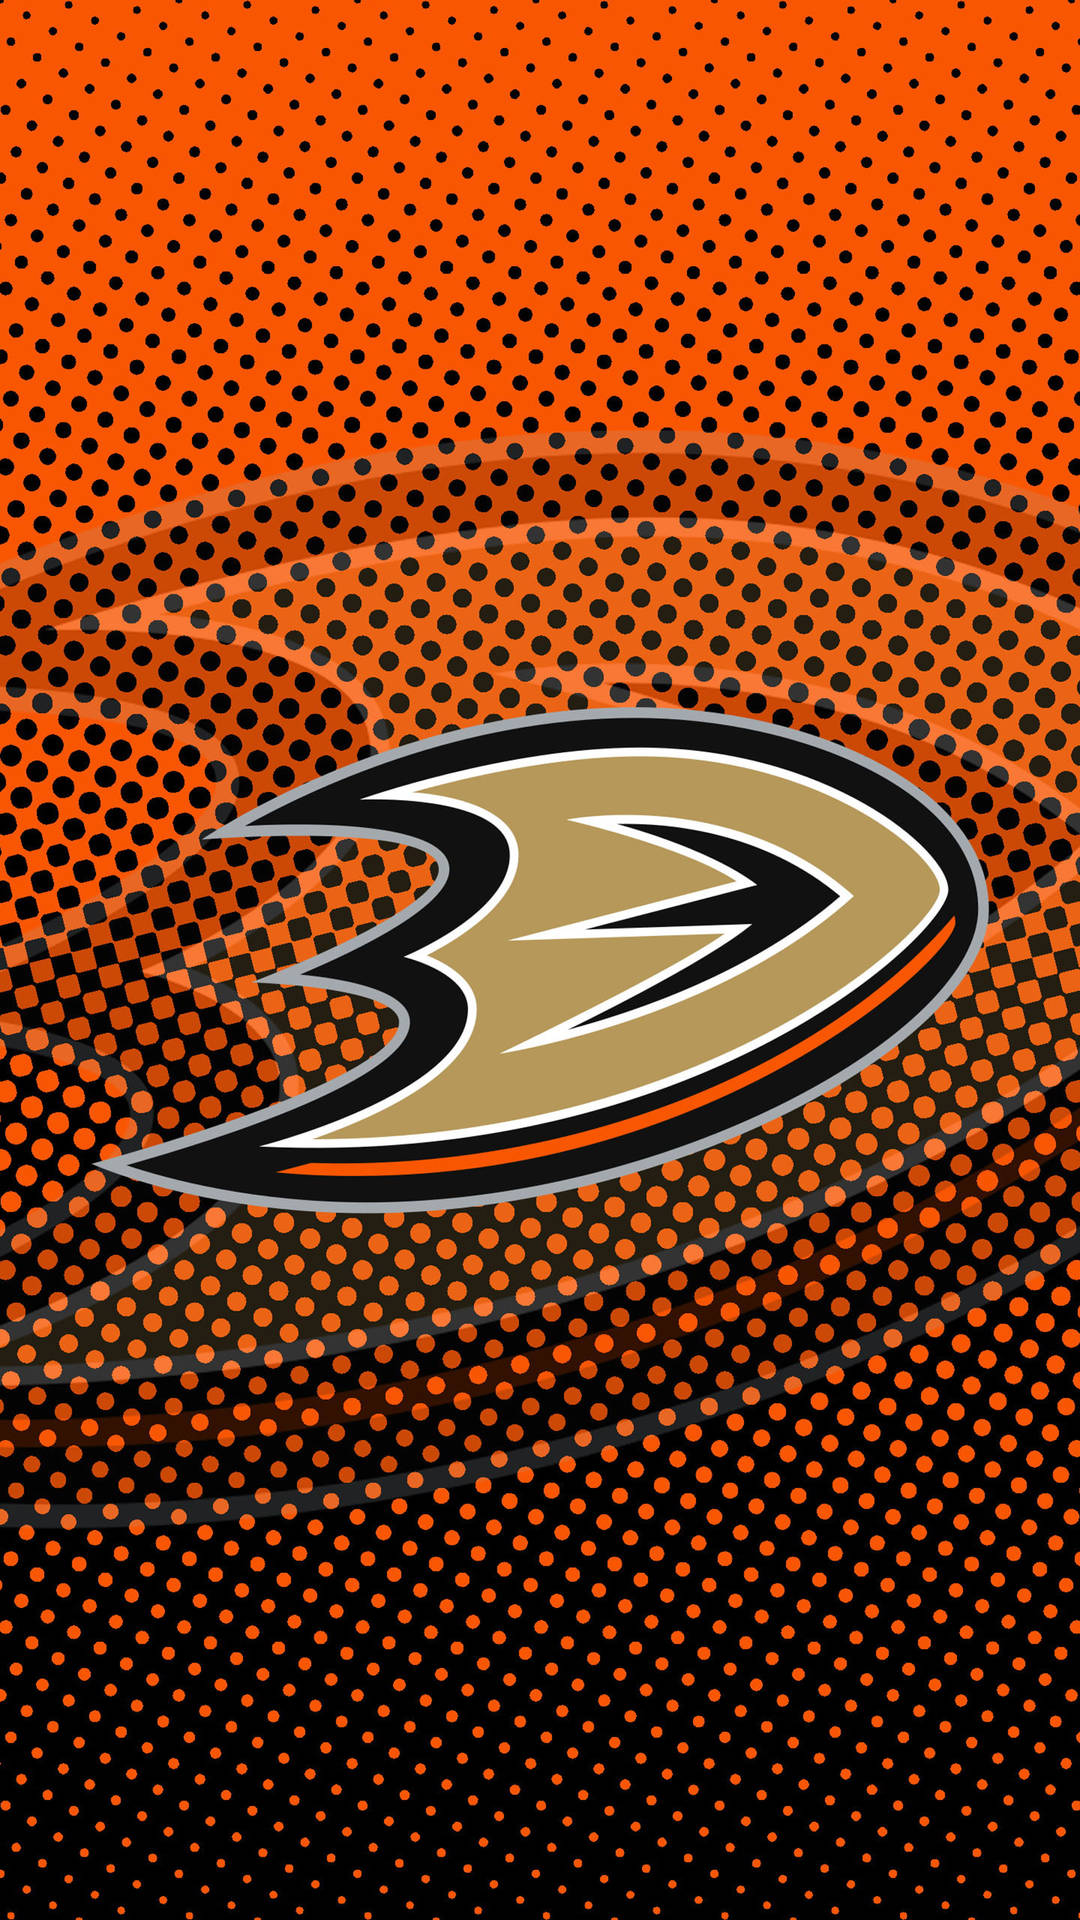 Anaheim Ducks Dotted Design